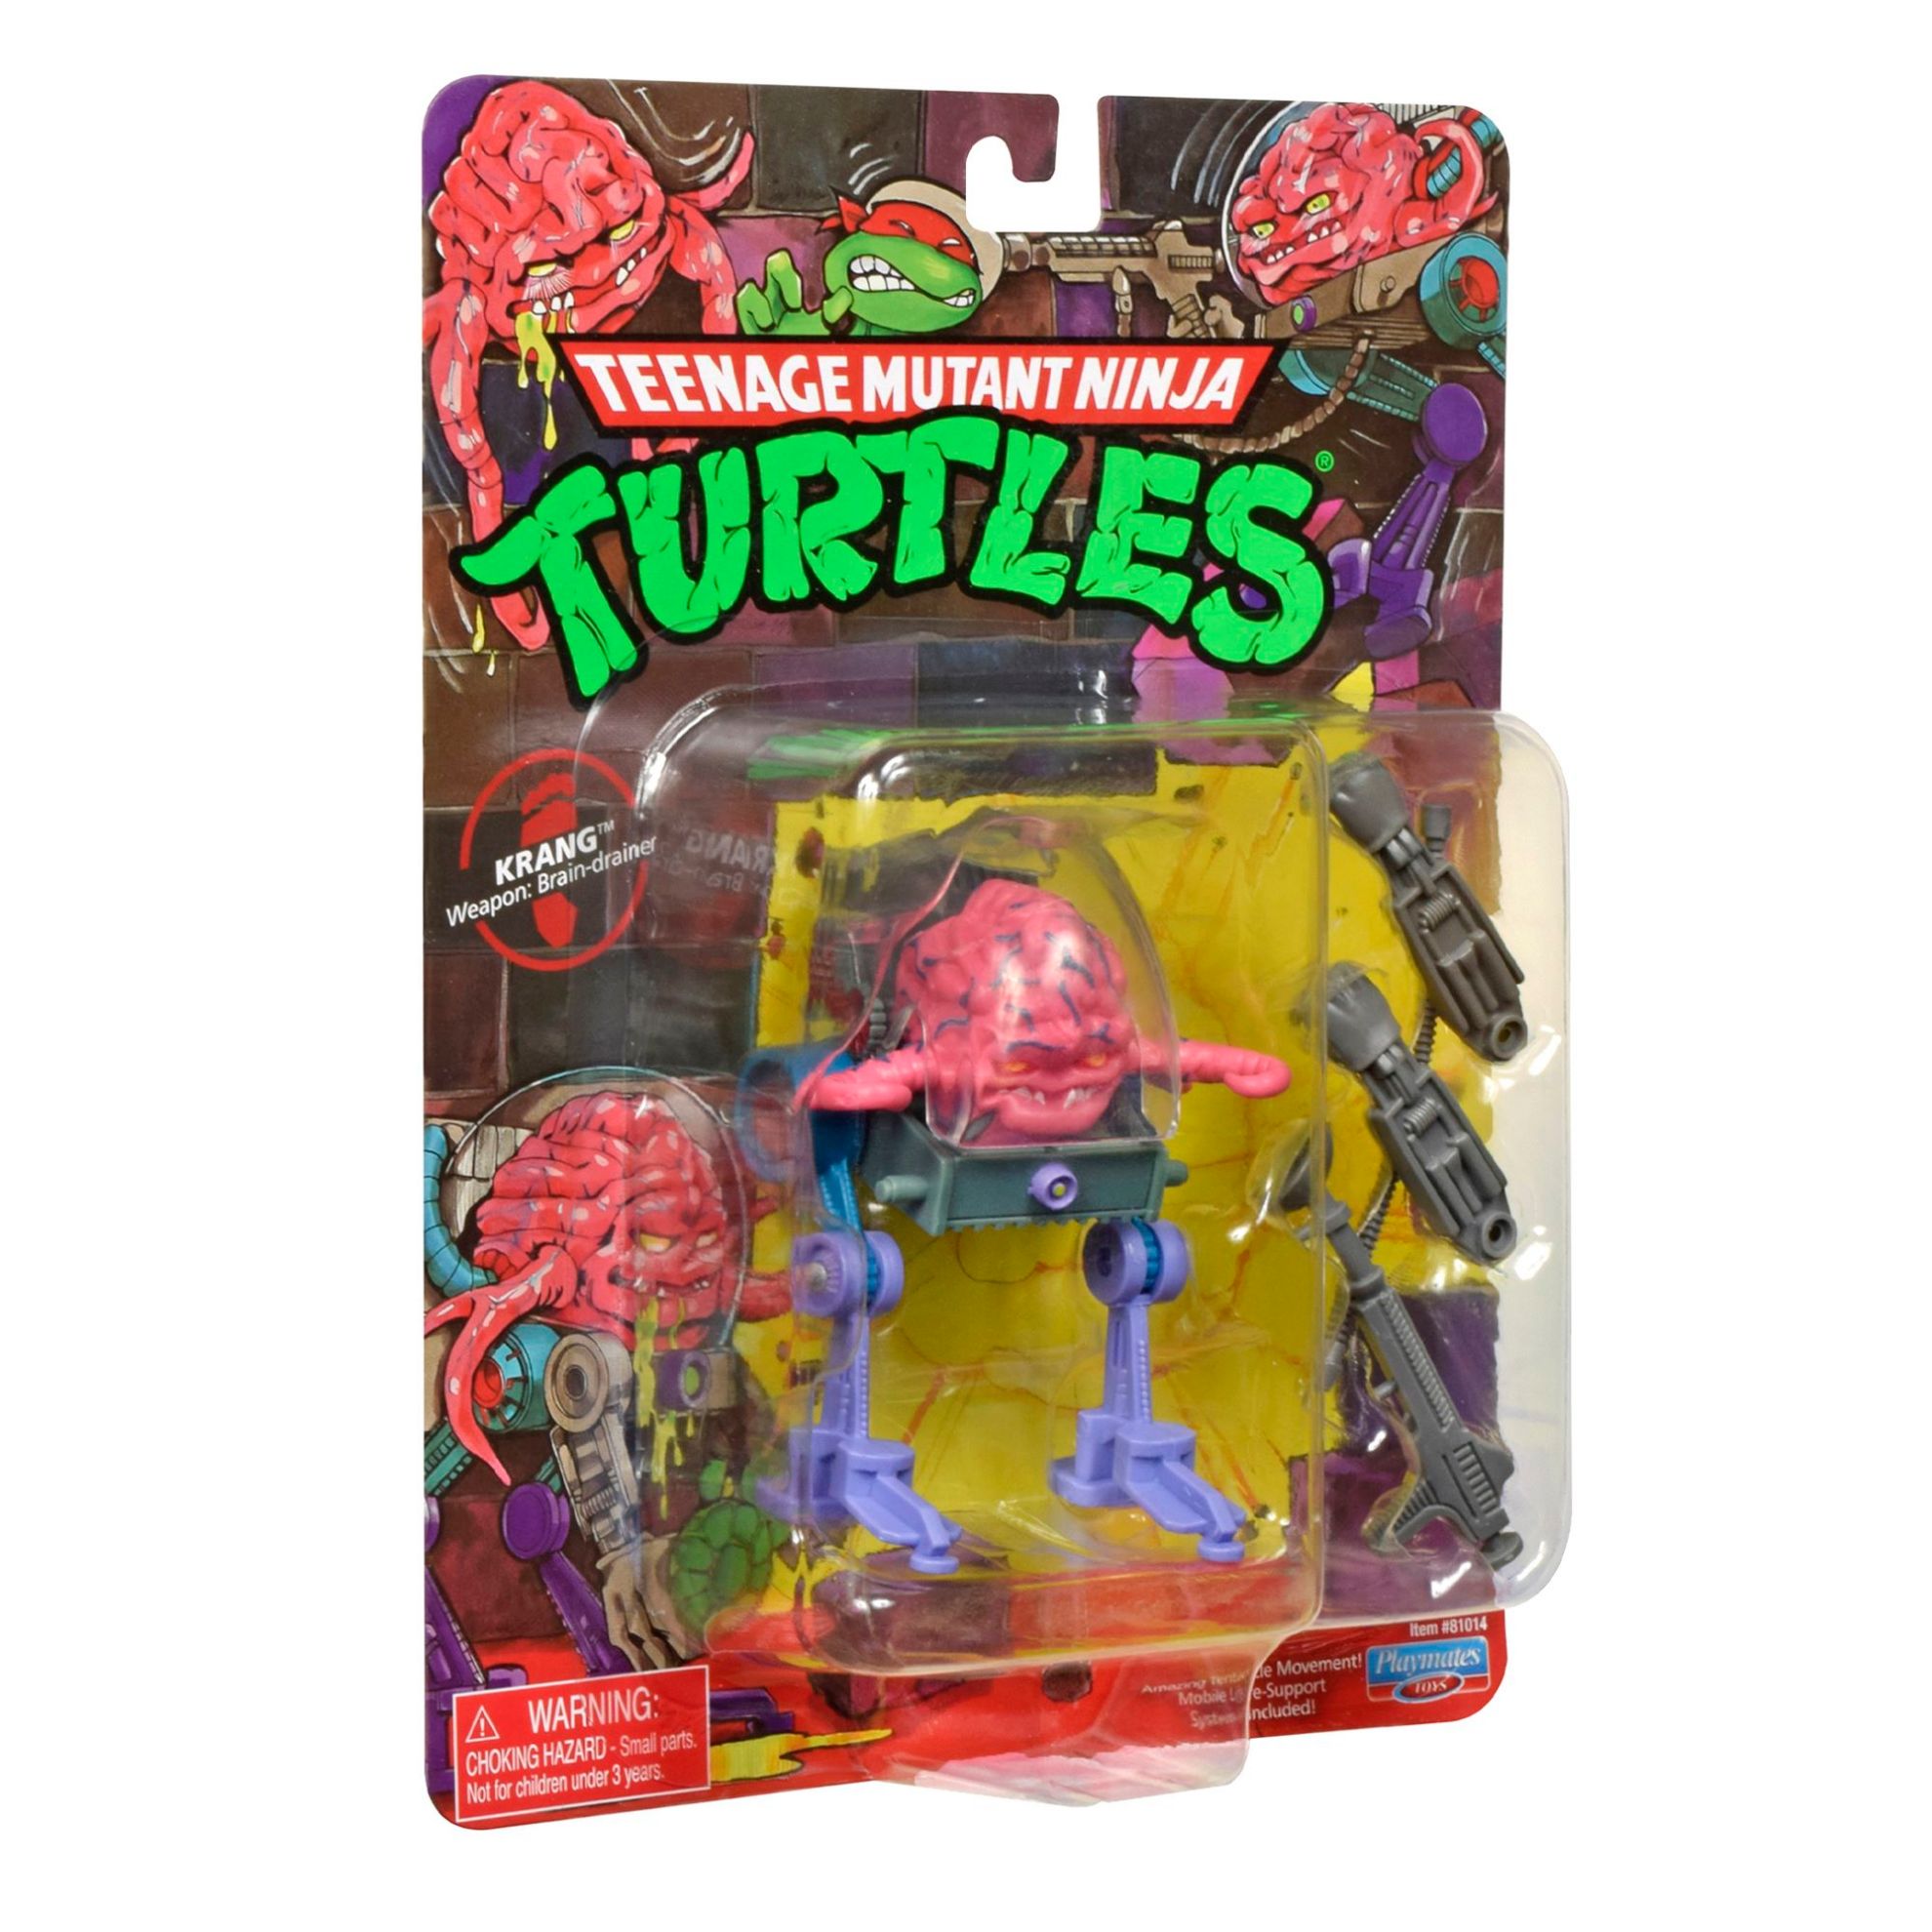 Teenage Mutant Ninja Turtles Classic Mutant Figures - Krang